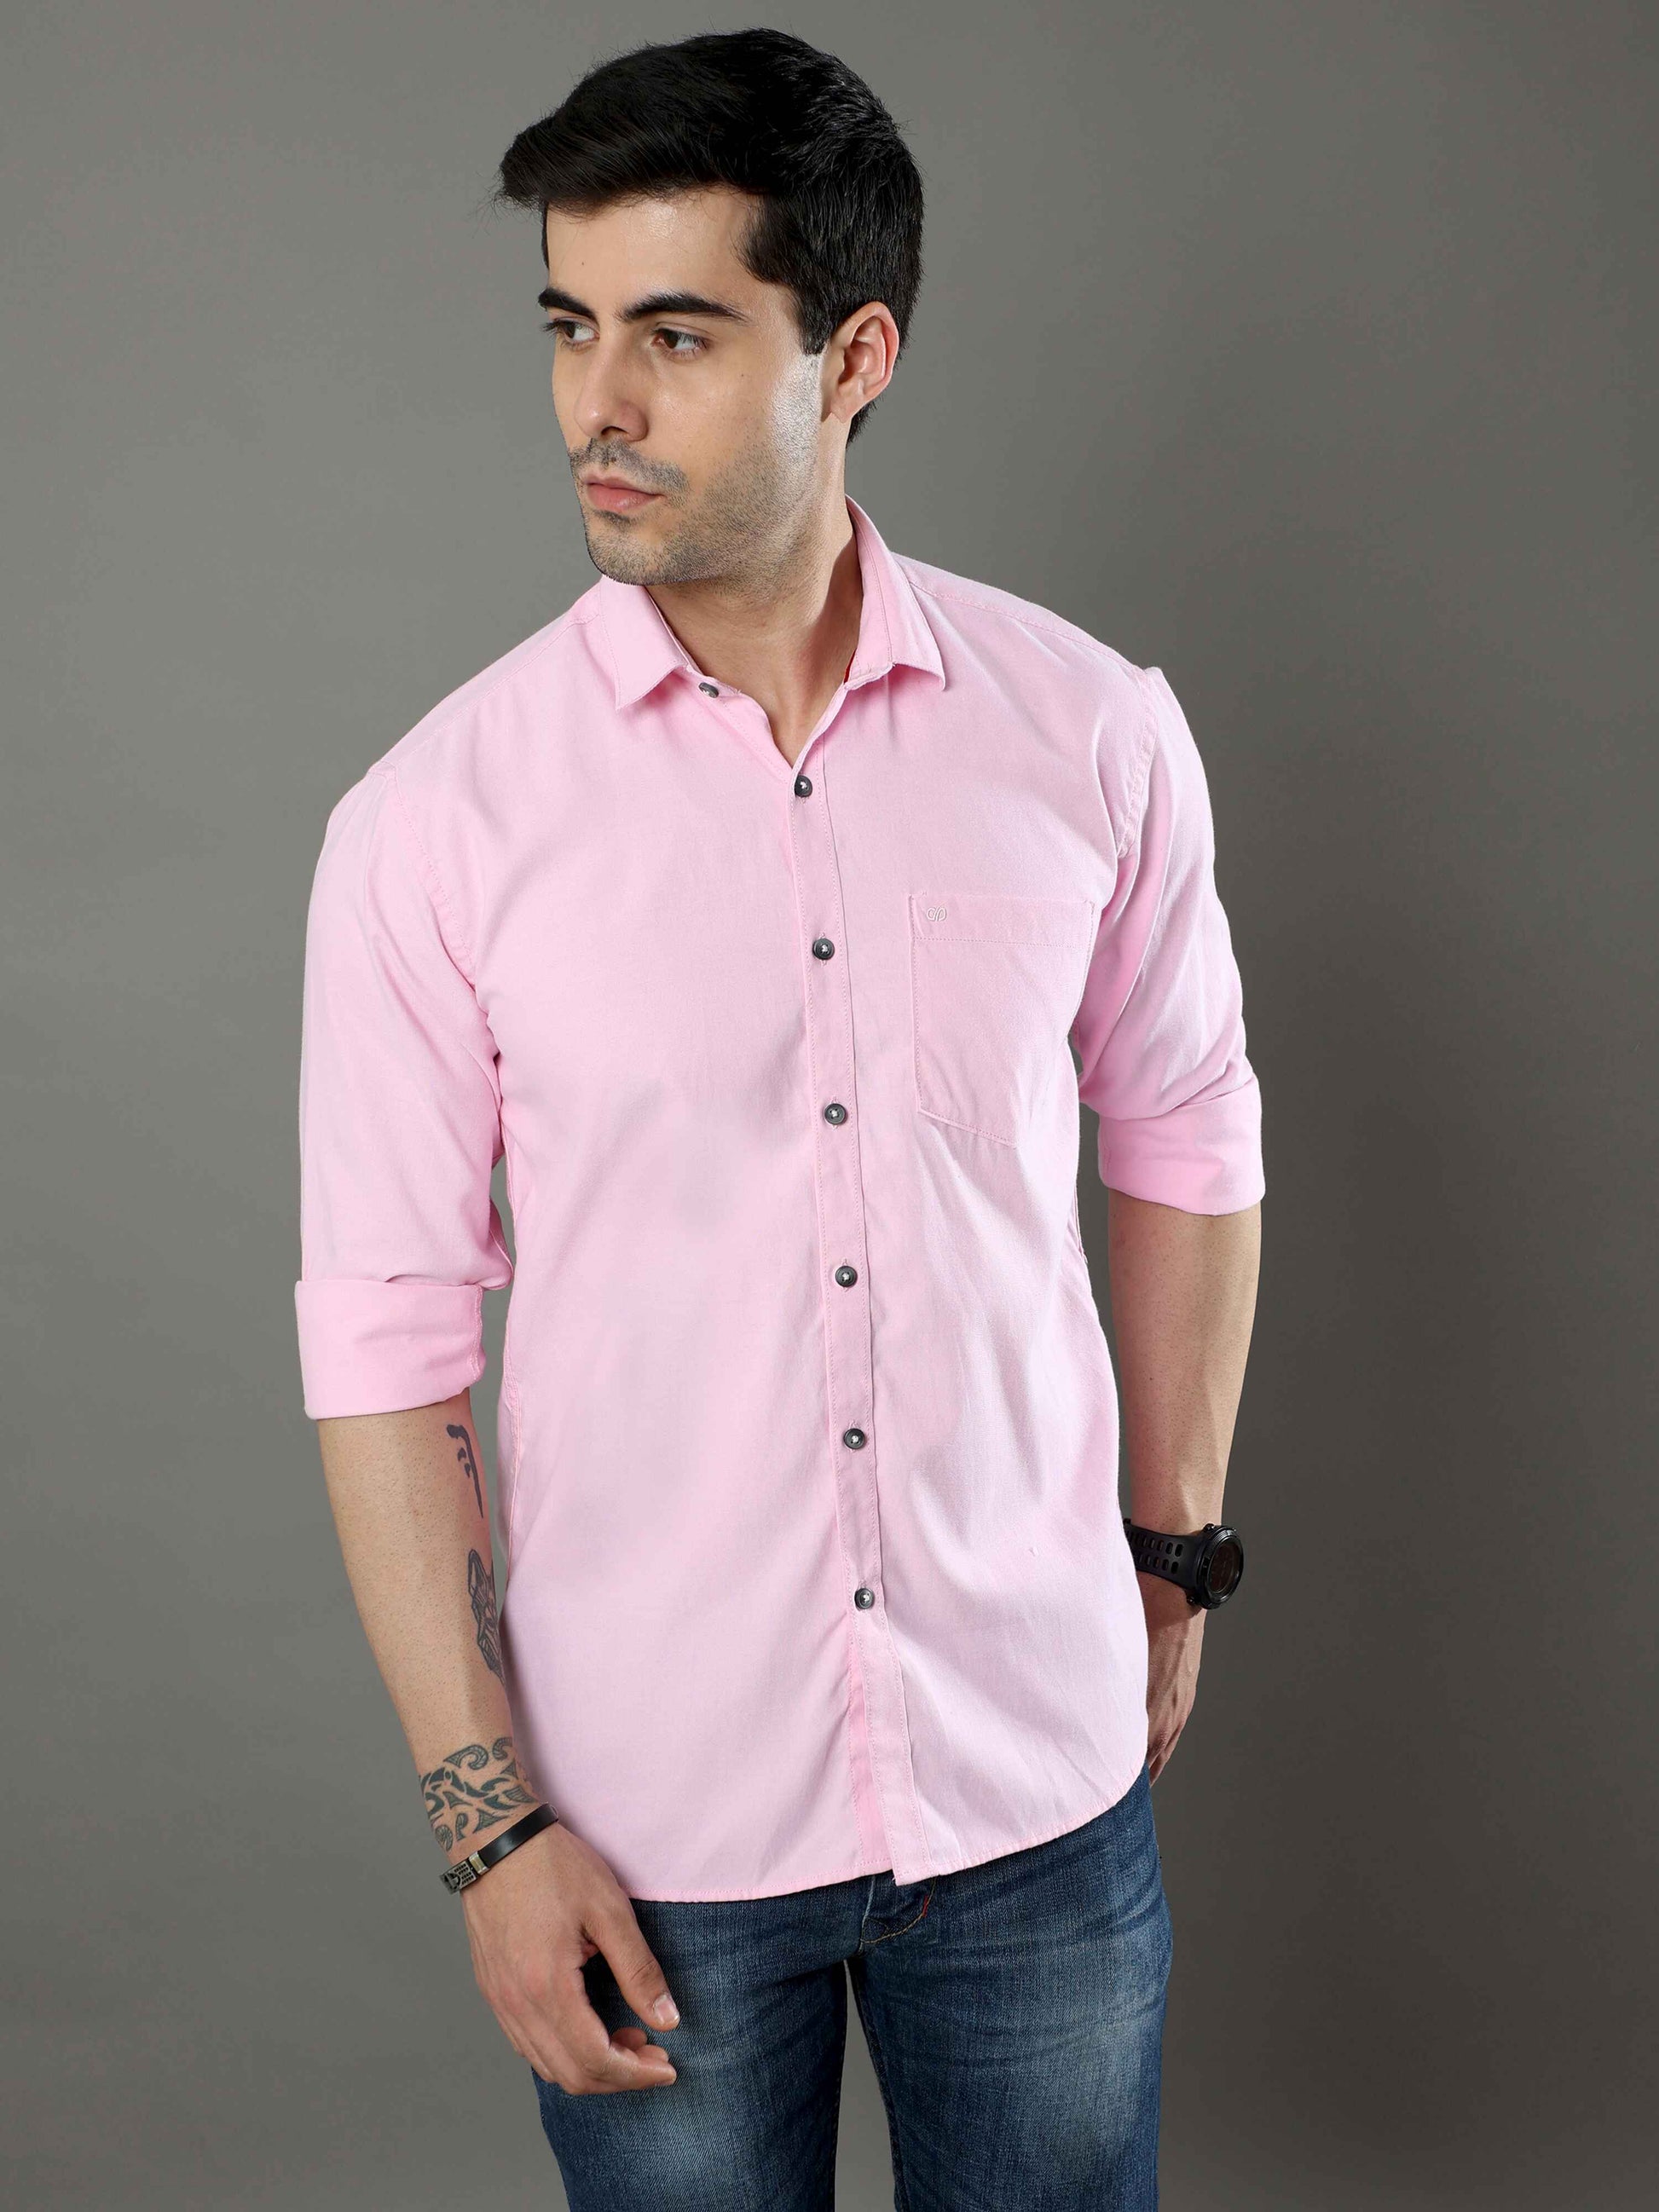 Oyster Pink Plain Shirt